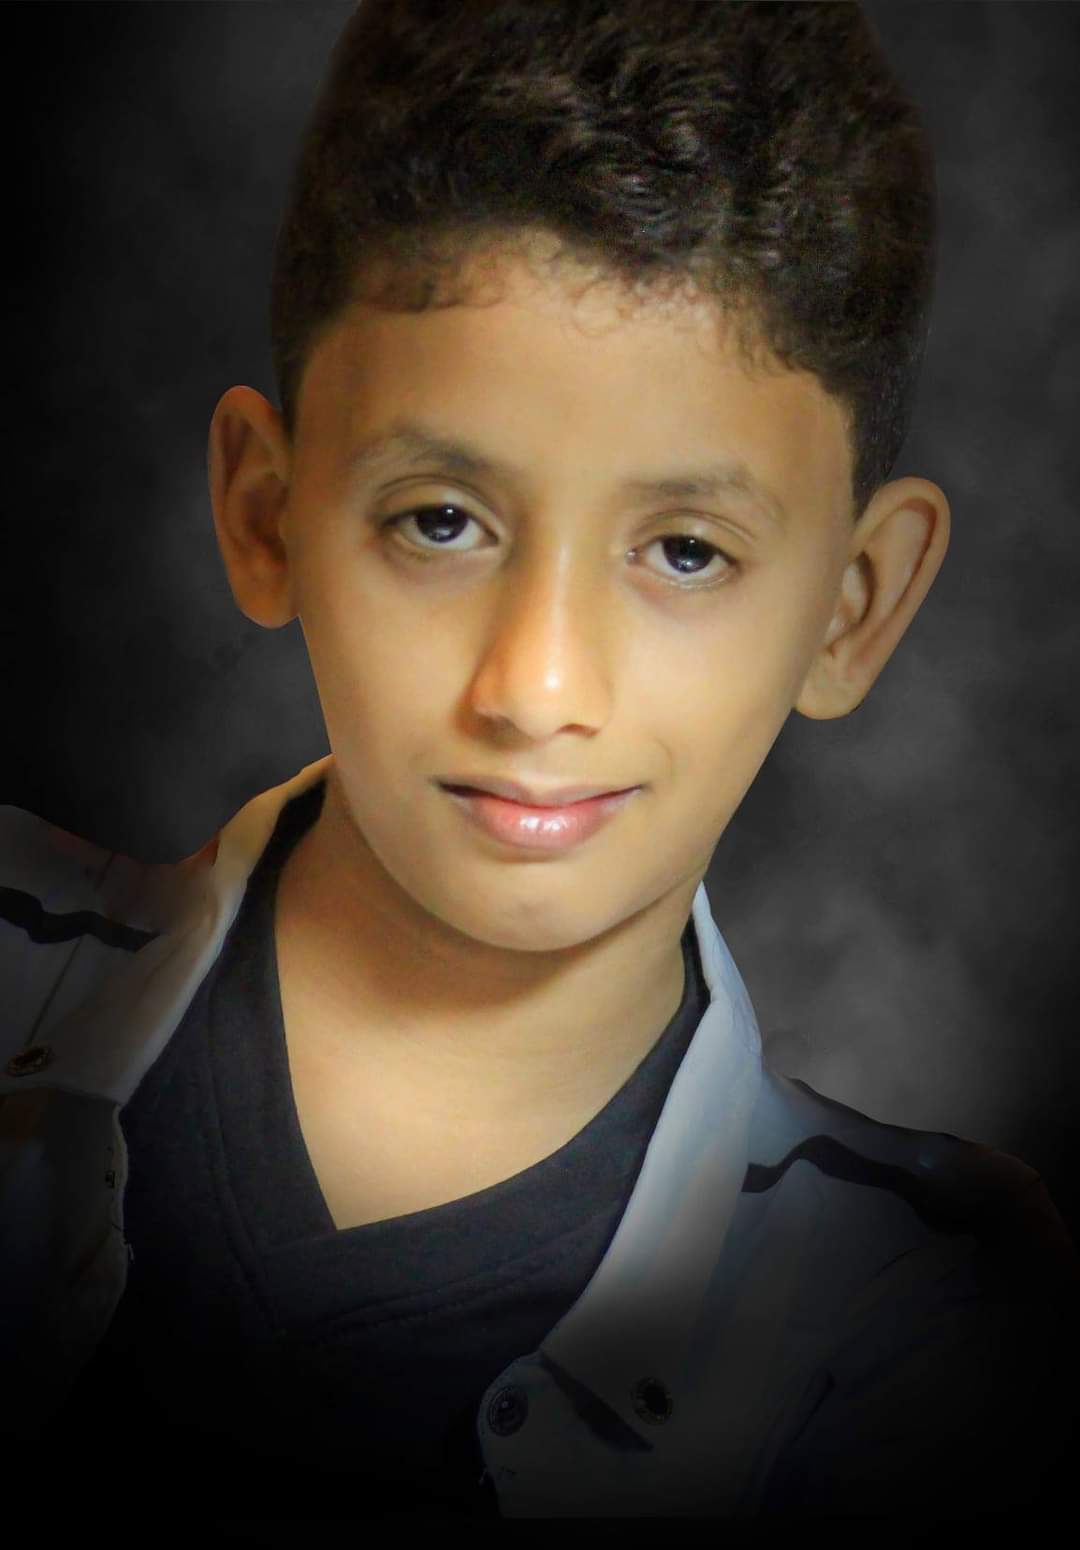 تعرف على الطفل اليمني الذي حقق أول إنجاز عالمي فوتوغرافي في مسابقة لوكسمبورج الدولية للتصوير